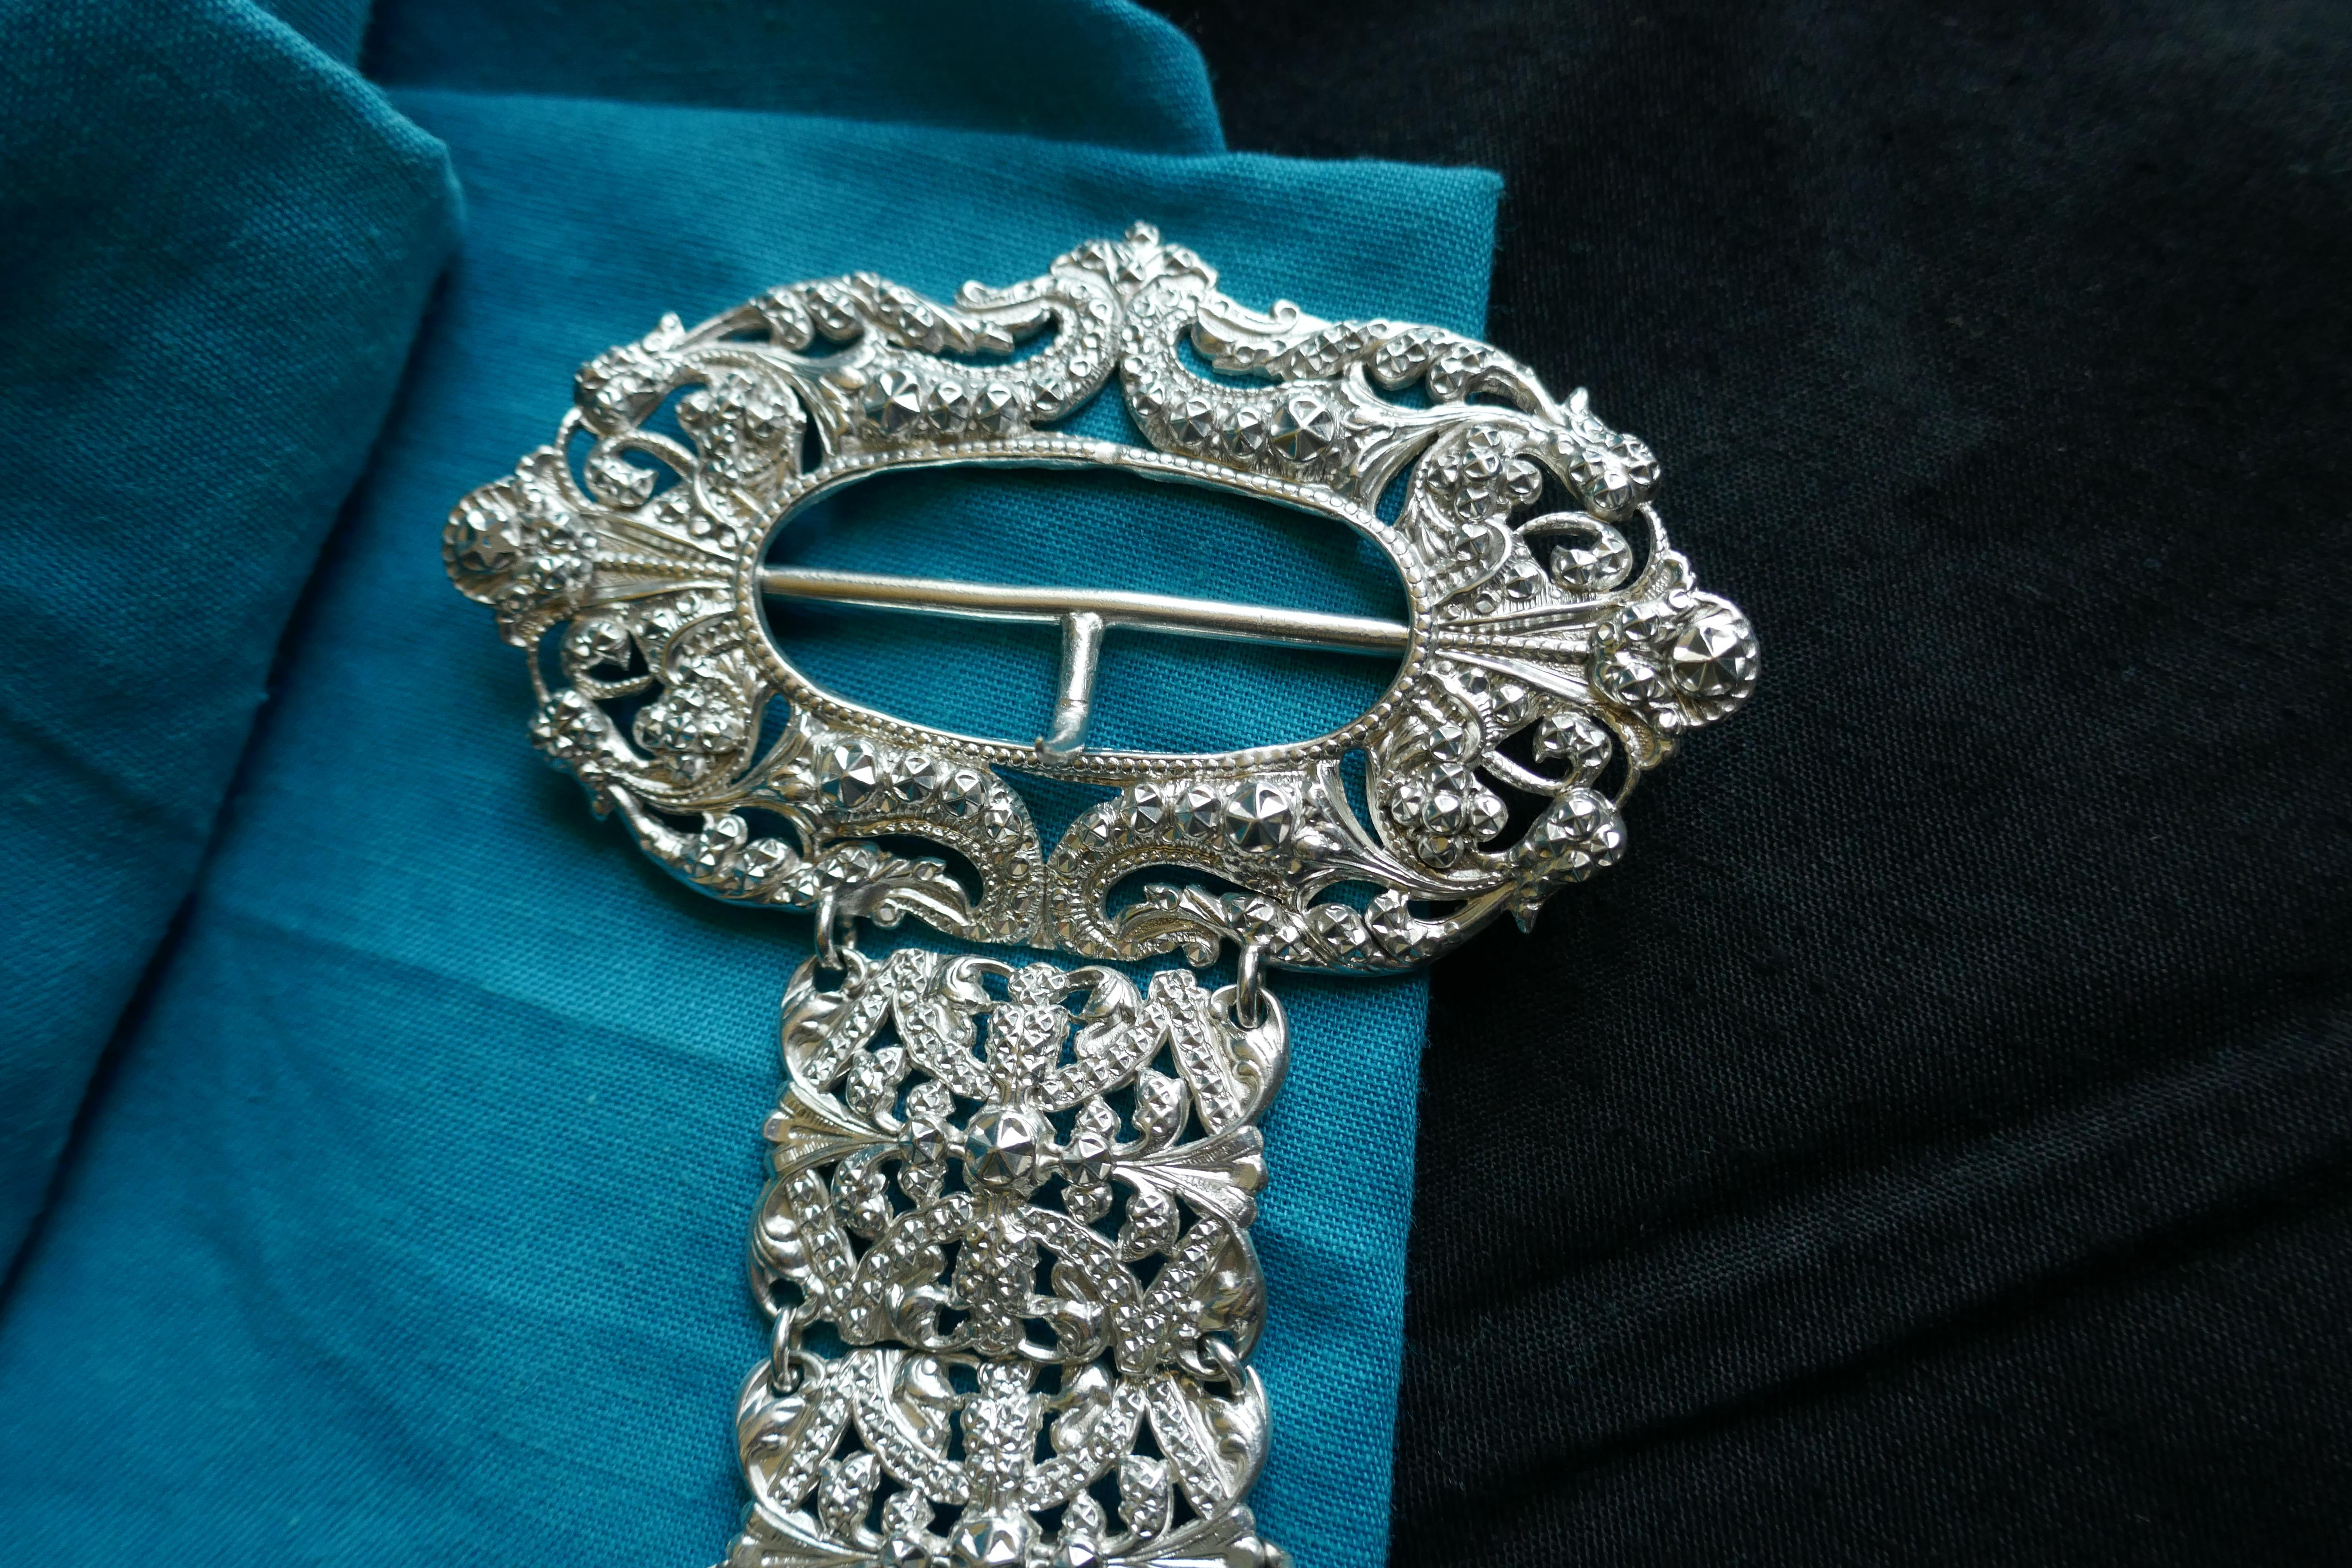 Französischer Gürtel aus Silber, gegliederte Glieder mit Chatelaine-Ring, Kunsthandwerk

Dies ist eine atemberaubende, Stück, der Gürtel besteht aus 27, 3,5 cm x 2,5 cm repousse Links zu einem Oval Schnalle mit einem zentralen vertikalen bar